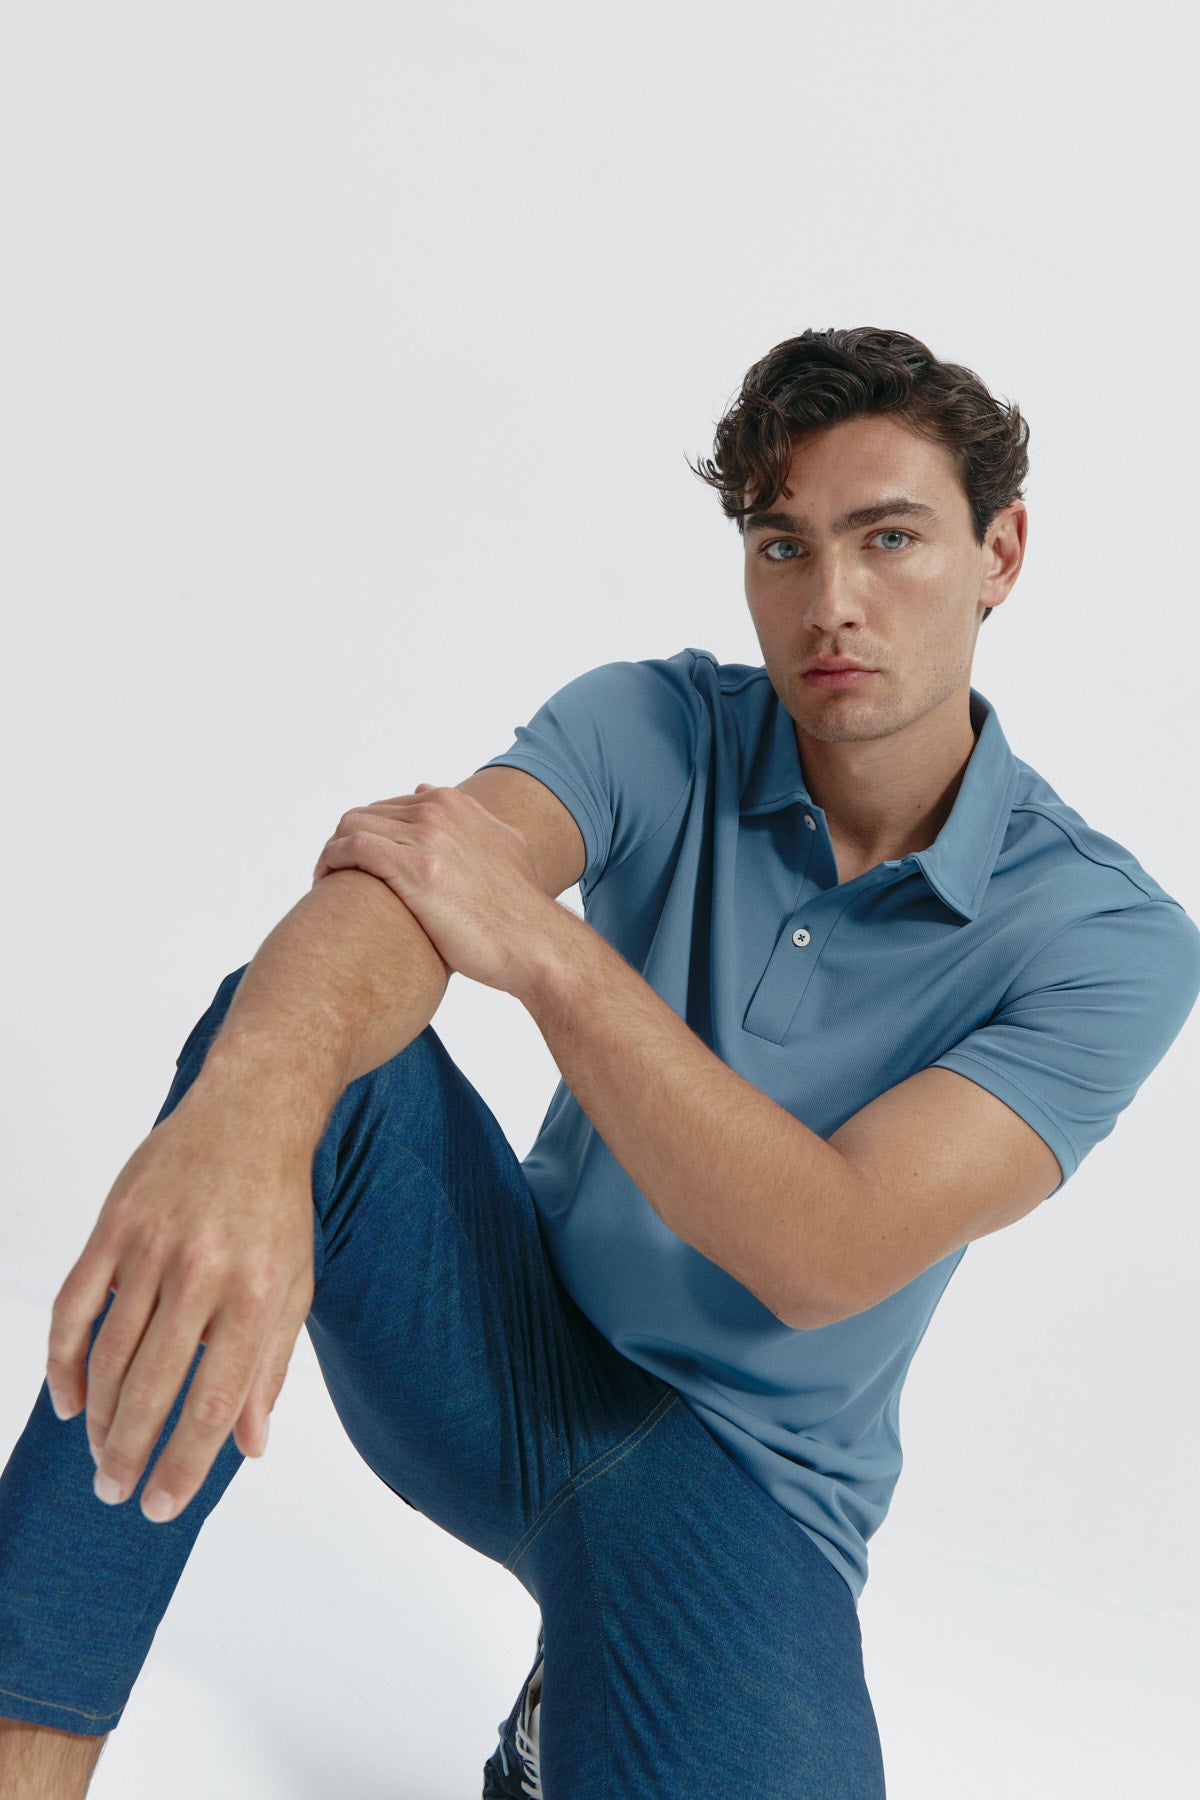 Polo manga corta para hombre en azul jacaranda de Sepiia, frescura y estilo para tu look casual. Foto flexibilidad